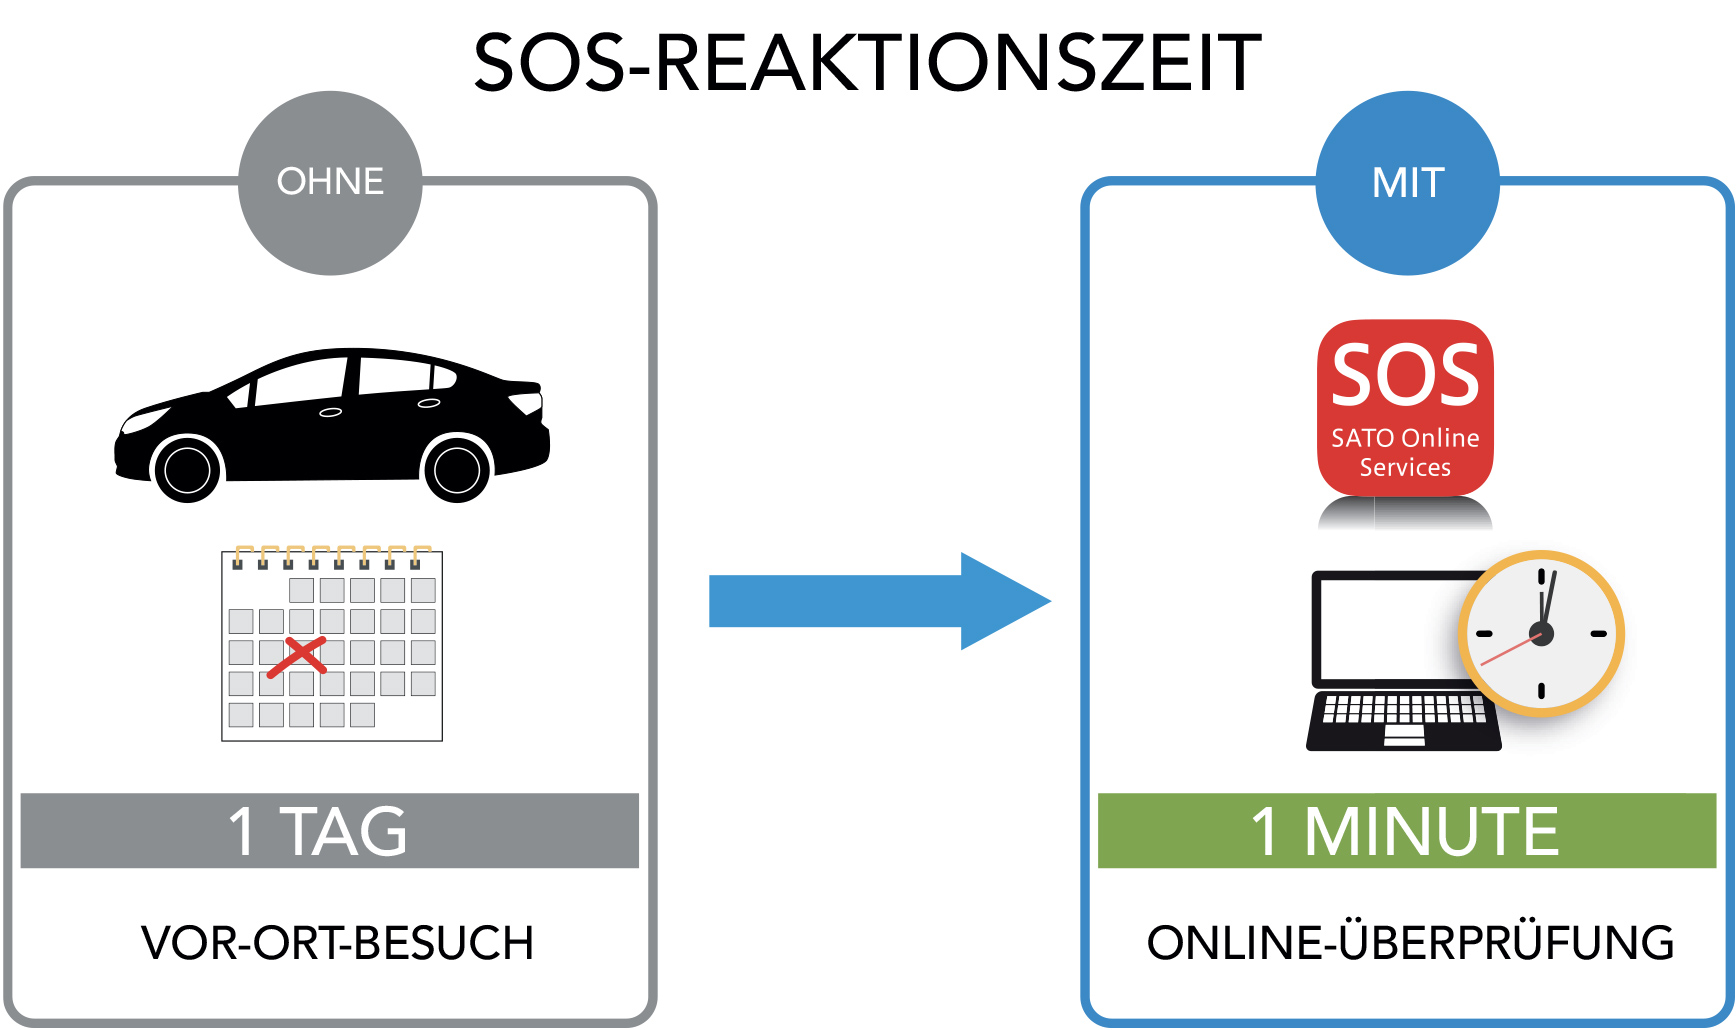 Darstellung der SOS-Reaktionszeit